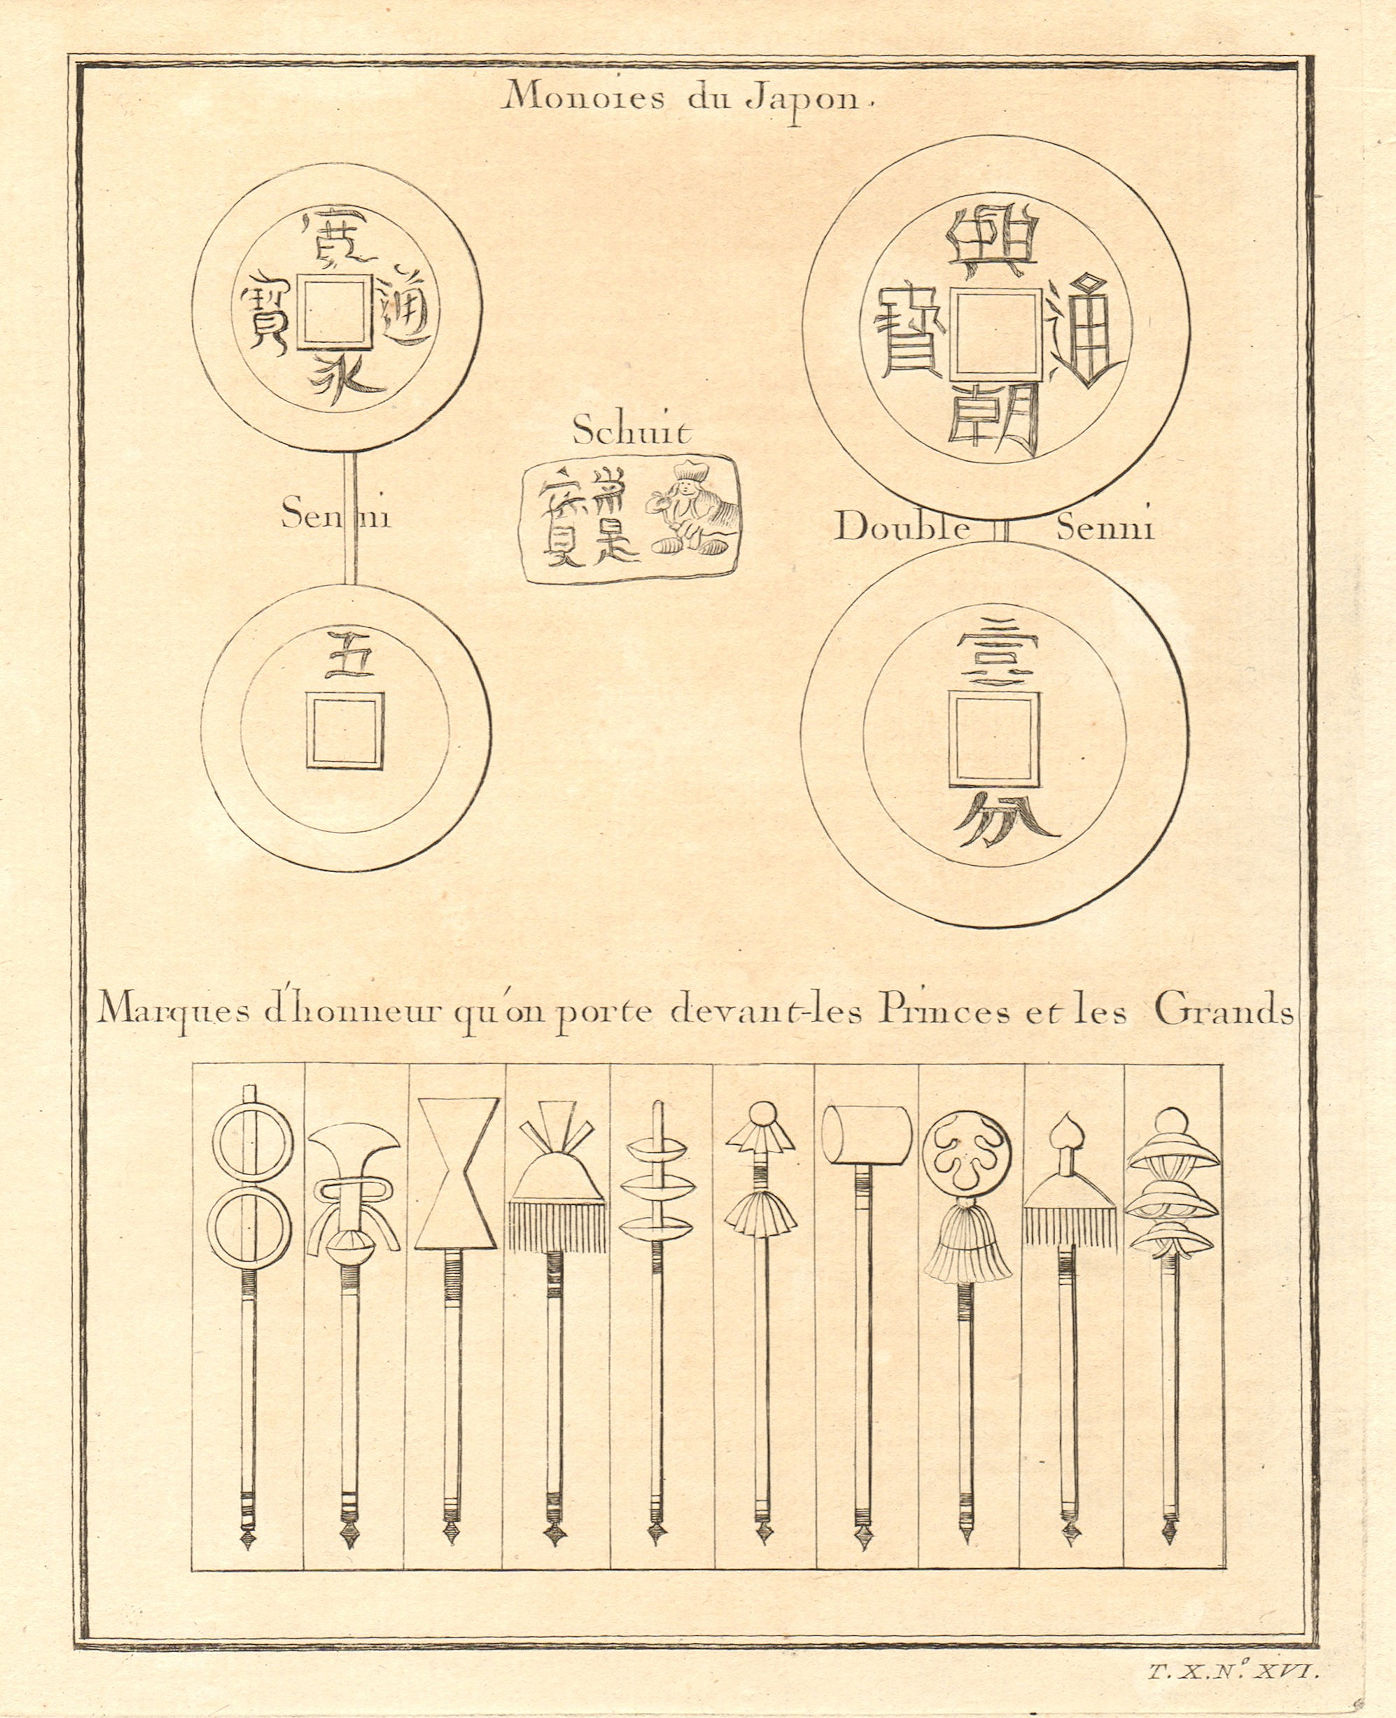 Monnoies du Japon & Marques d’honneur. Japanese coins & Badges of honour 1752